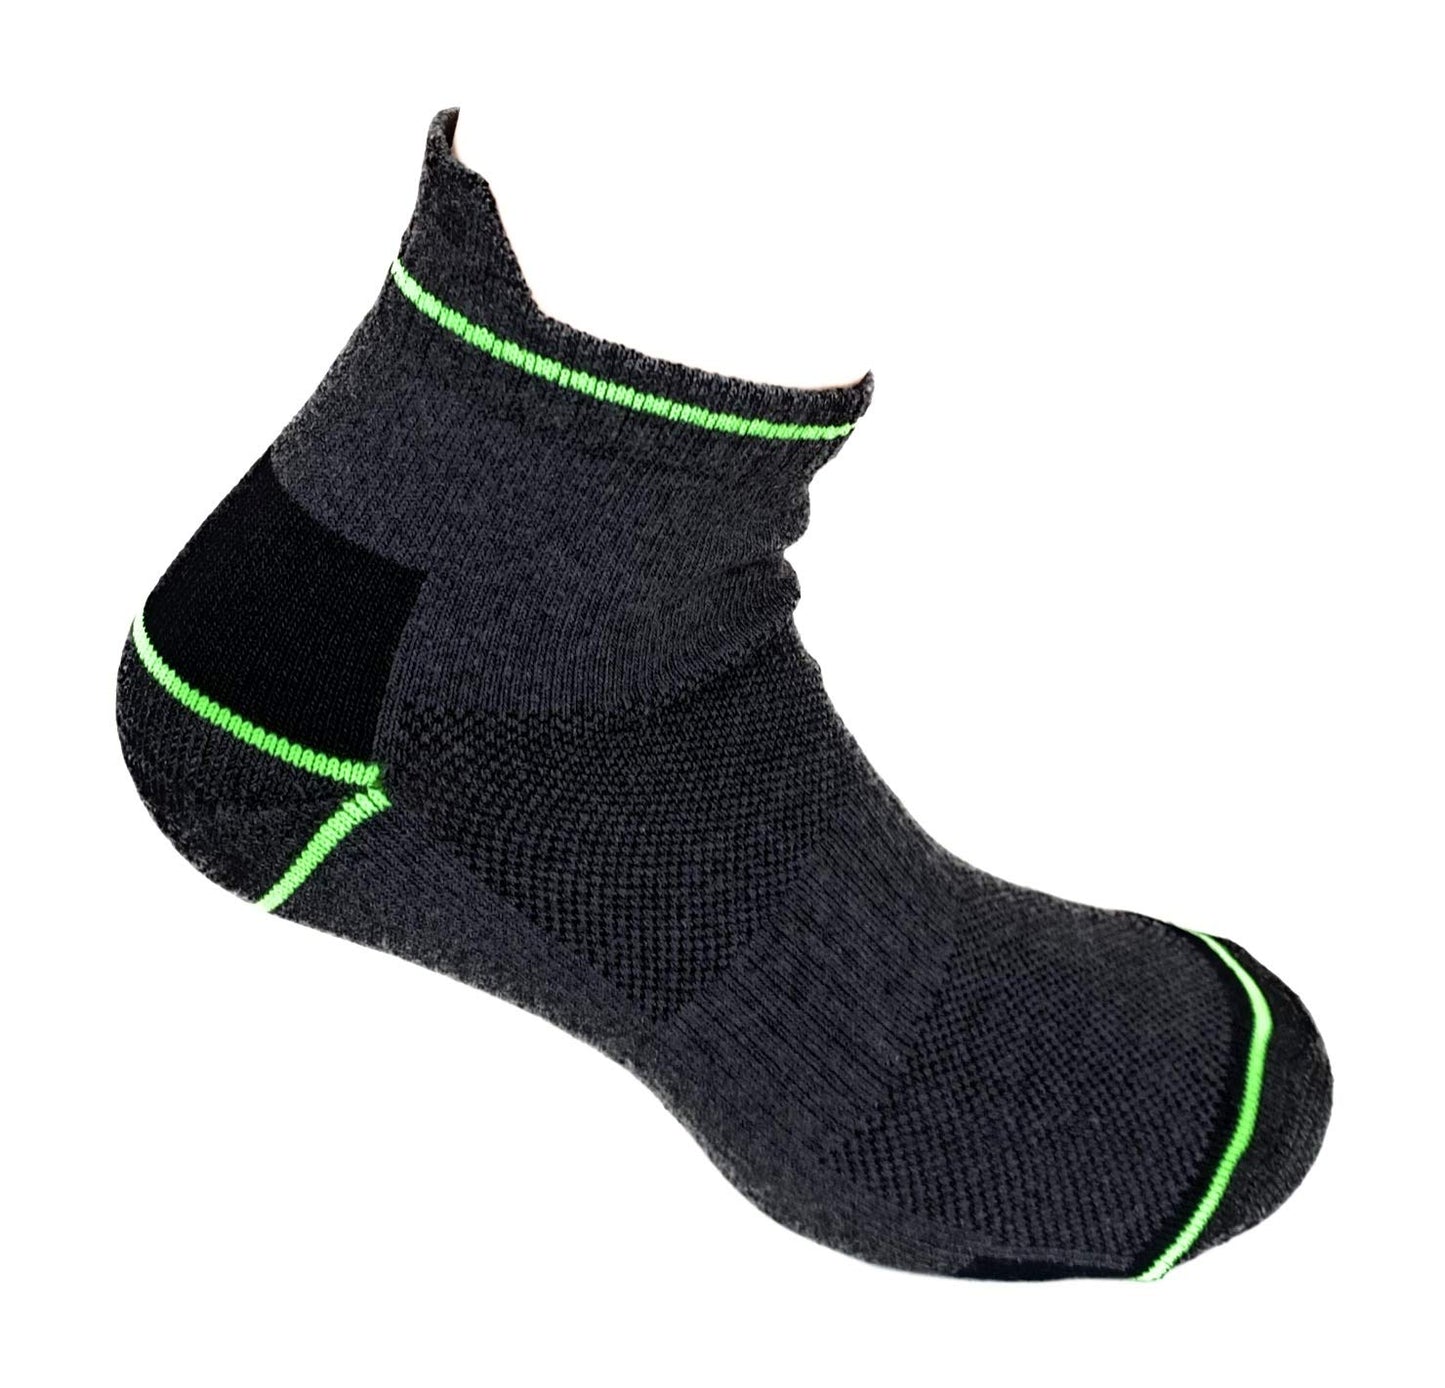 Lucchetti Socks Milano Calze da lavoro altezza caviglia cotone 6 PAIA rinforzate punta e tallone per scarpe antinfortunistiche alta resistenza